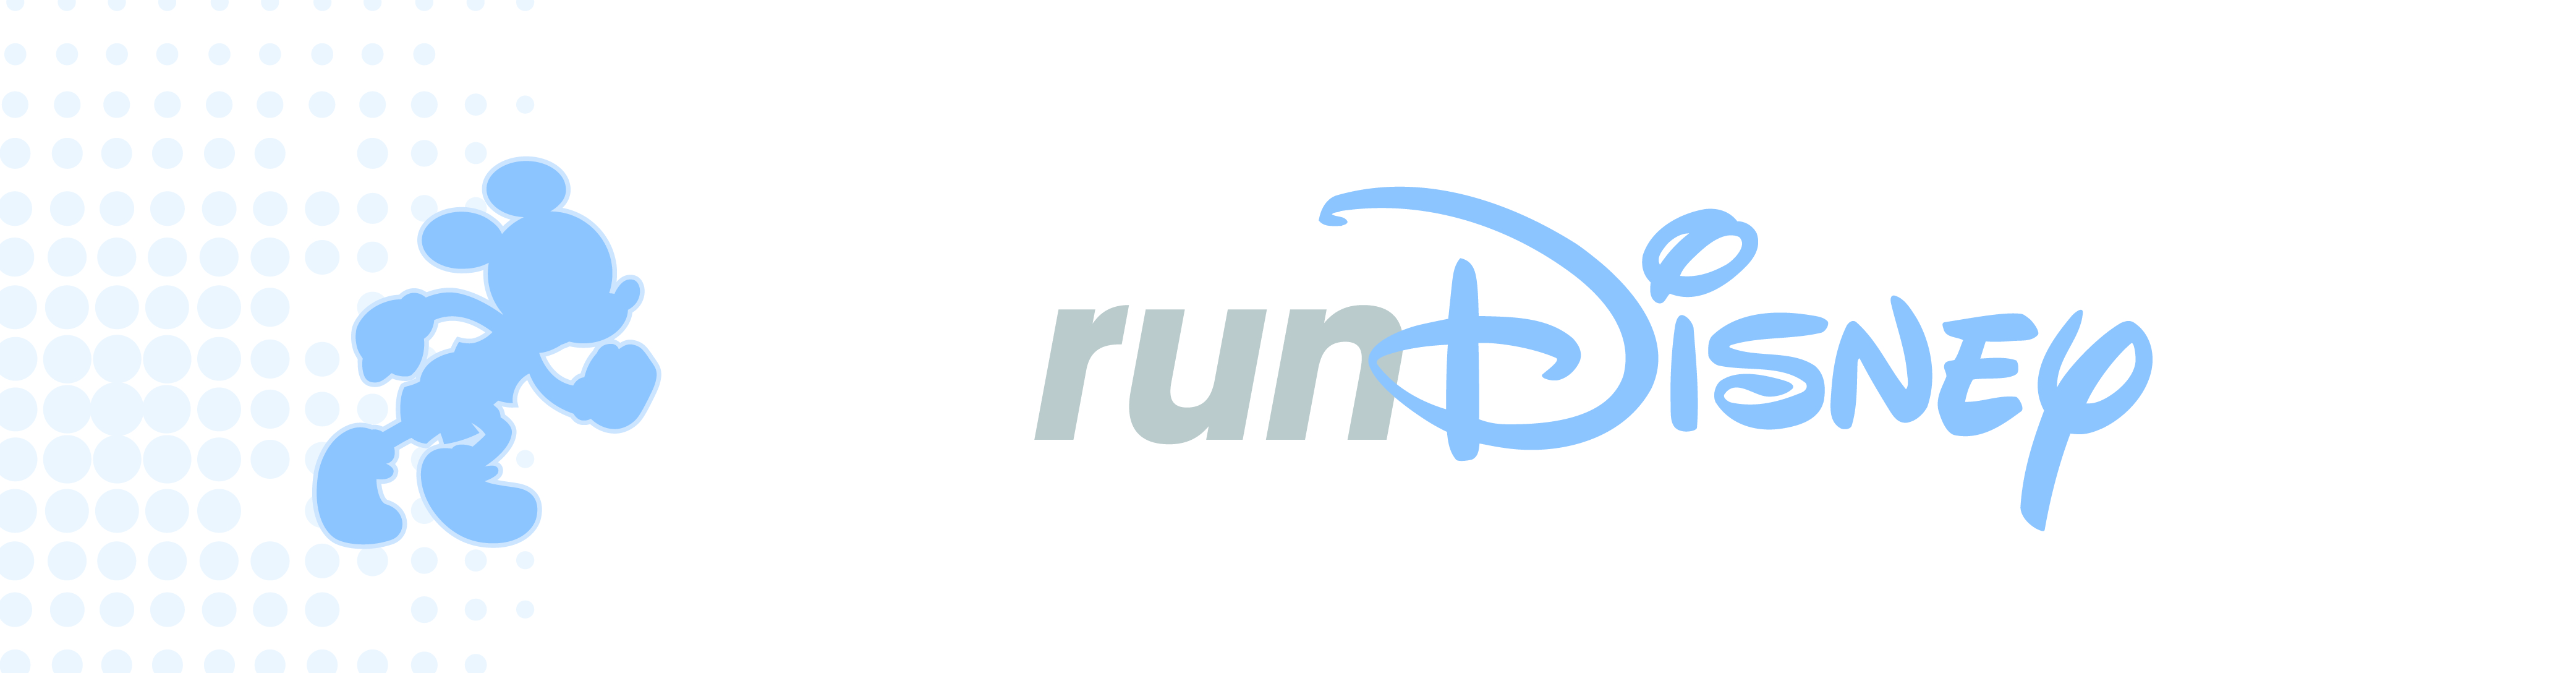 Ponto Orlando Dicas da Disney Run Disney 001